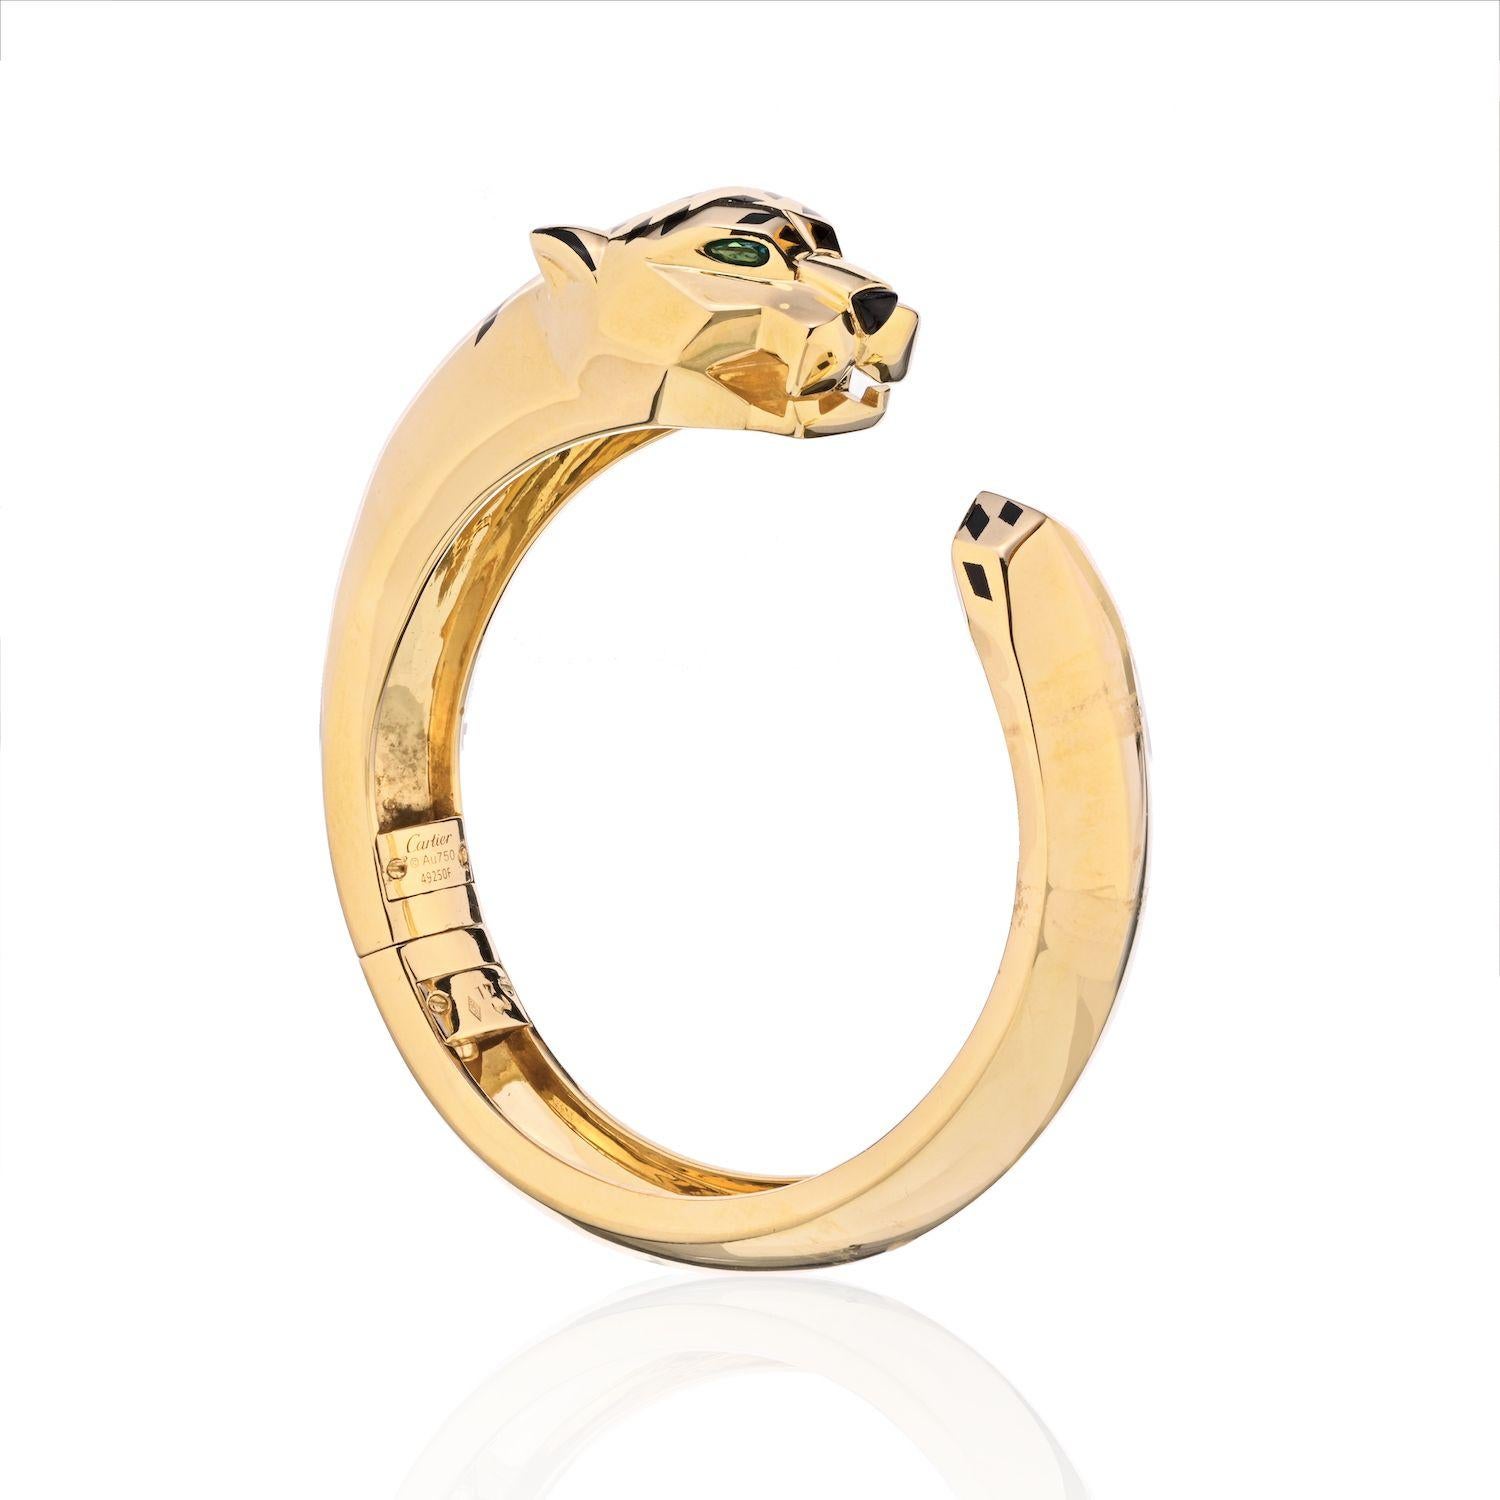 Cartier 18K Gelbgold Panthere Größe 17 Armspange Armband.
Ein Cartier Panthere-Armreif mit Scharnier aus 18 Karat Gold, der in einem skulpturalen Pantherkopf mit Peridot-Augen und Onyx-Nase gipfelt, der mit schwarzen Lackflecken verziert ist.
Die